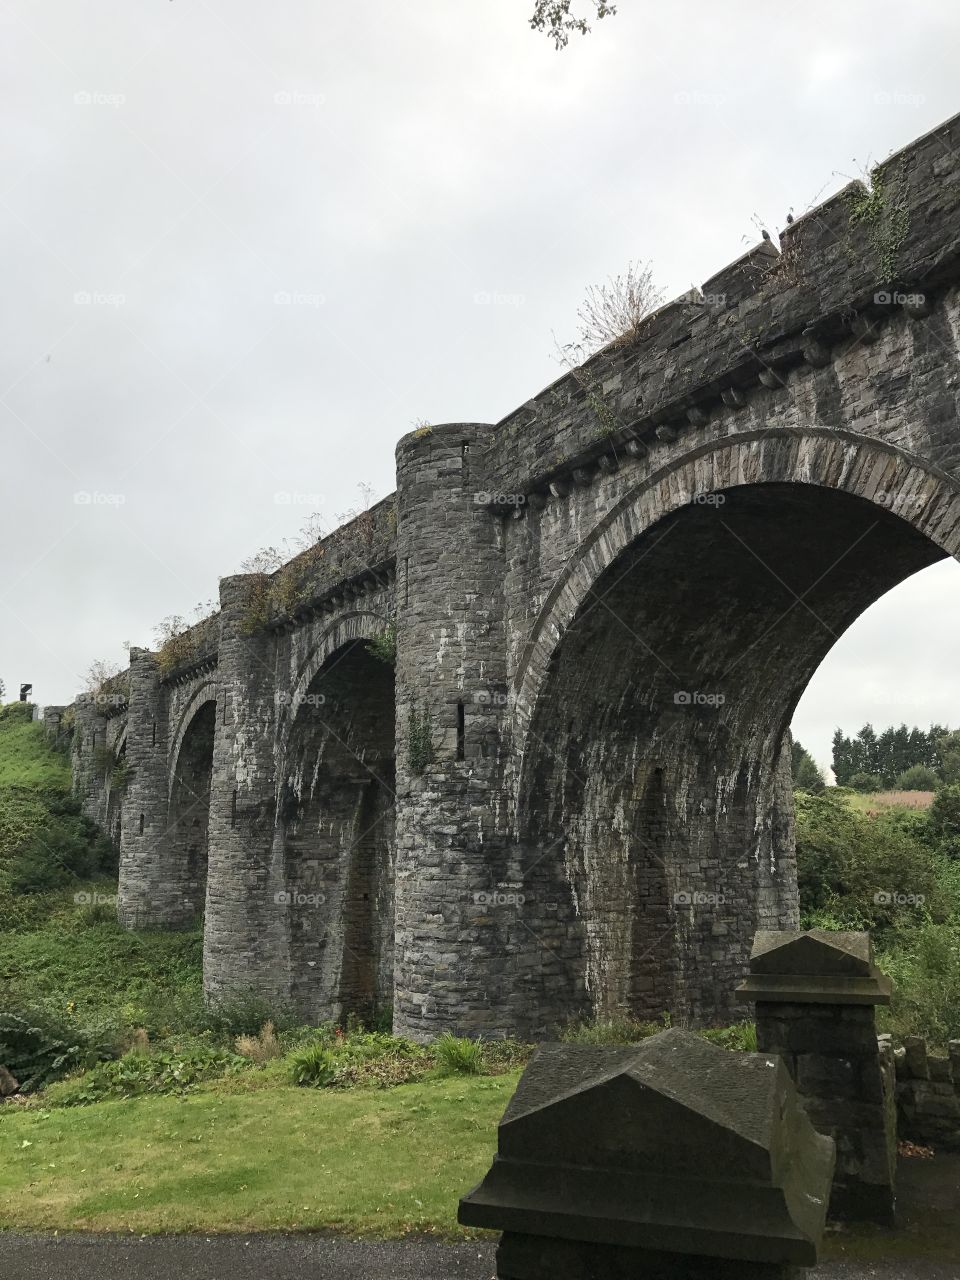 Railway bridge in Drogheda, Ireland 